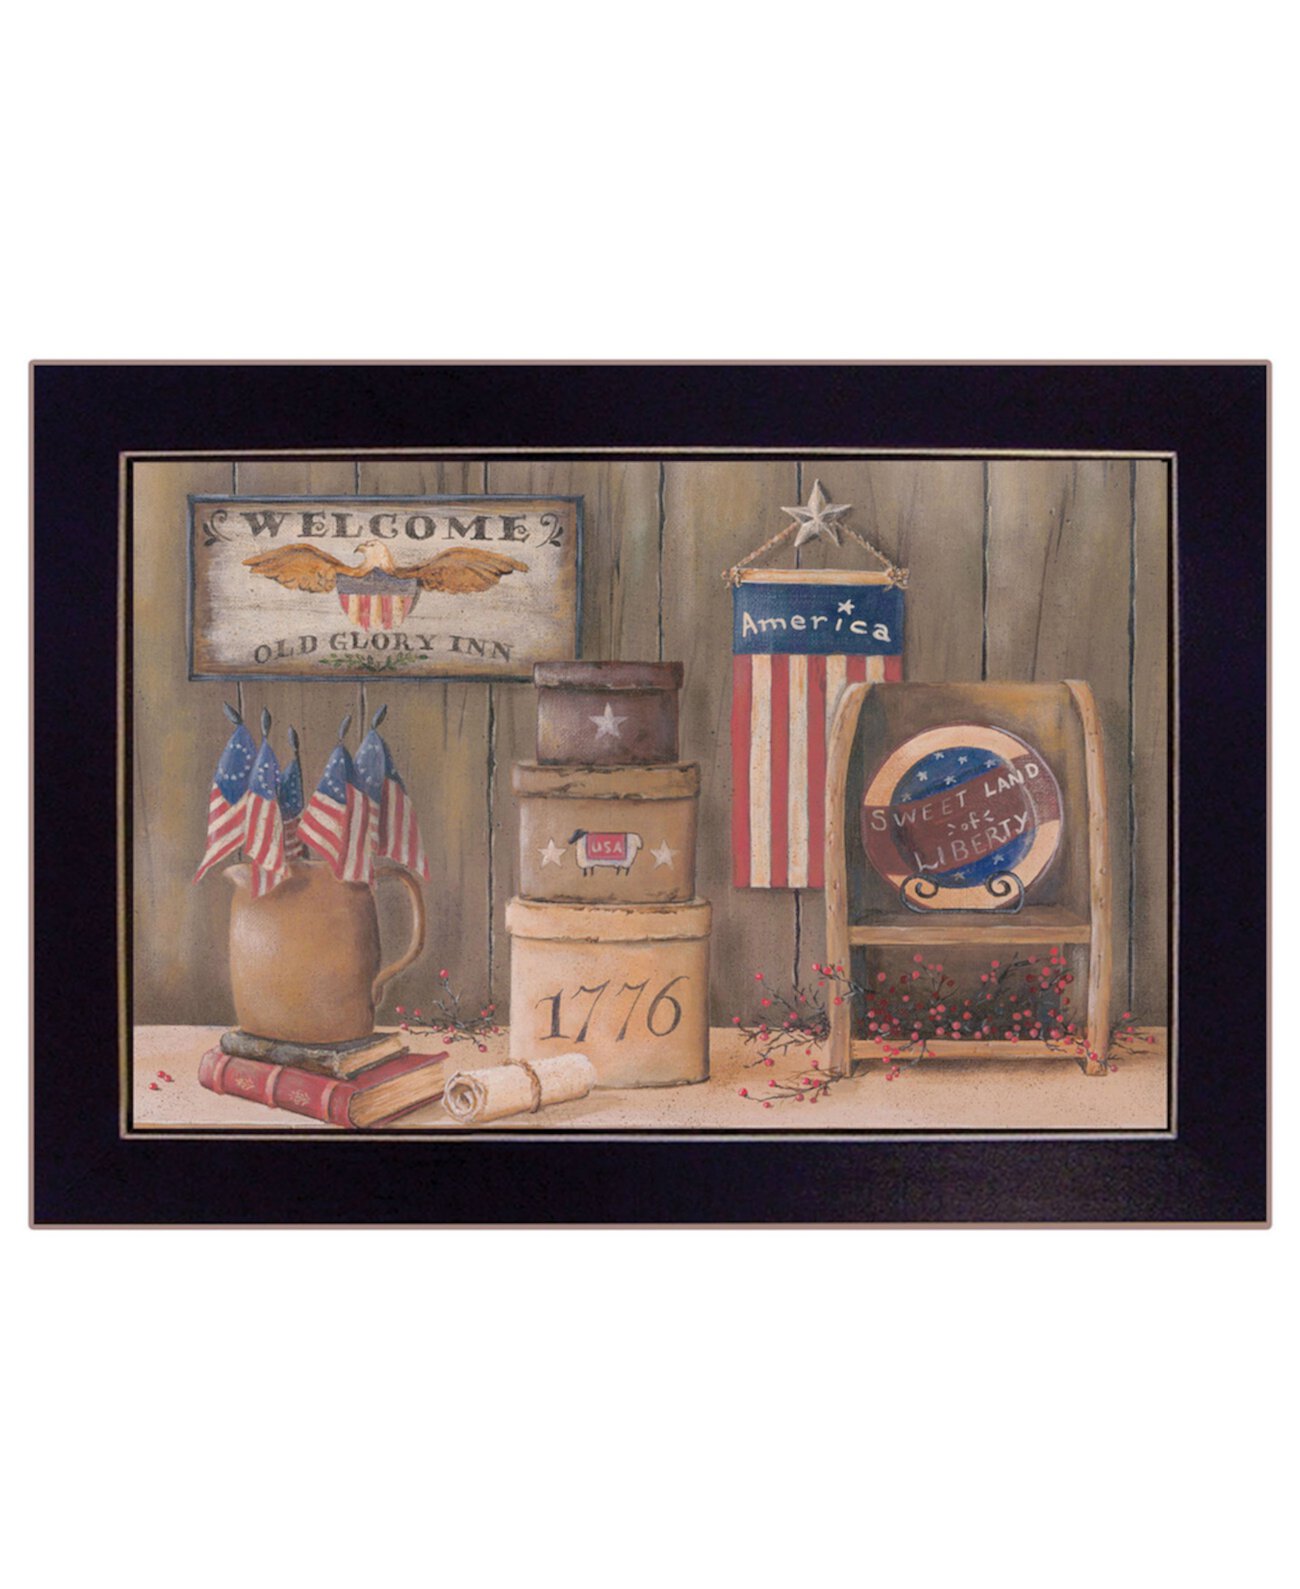 Sweet Land of Liberty, автор Пэм Бриттон, настенные рисунки с принтом, готовые к развешиванию, черная рамка, 18 "x 14" Trendy Décor 4U